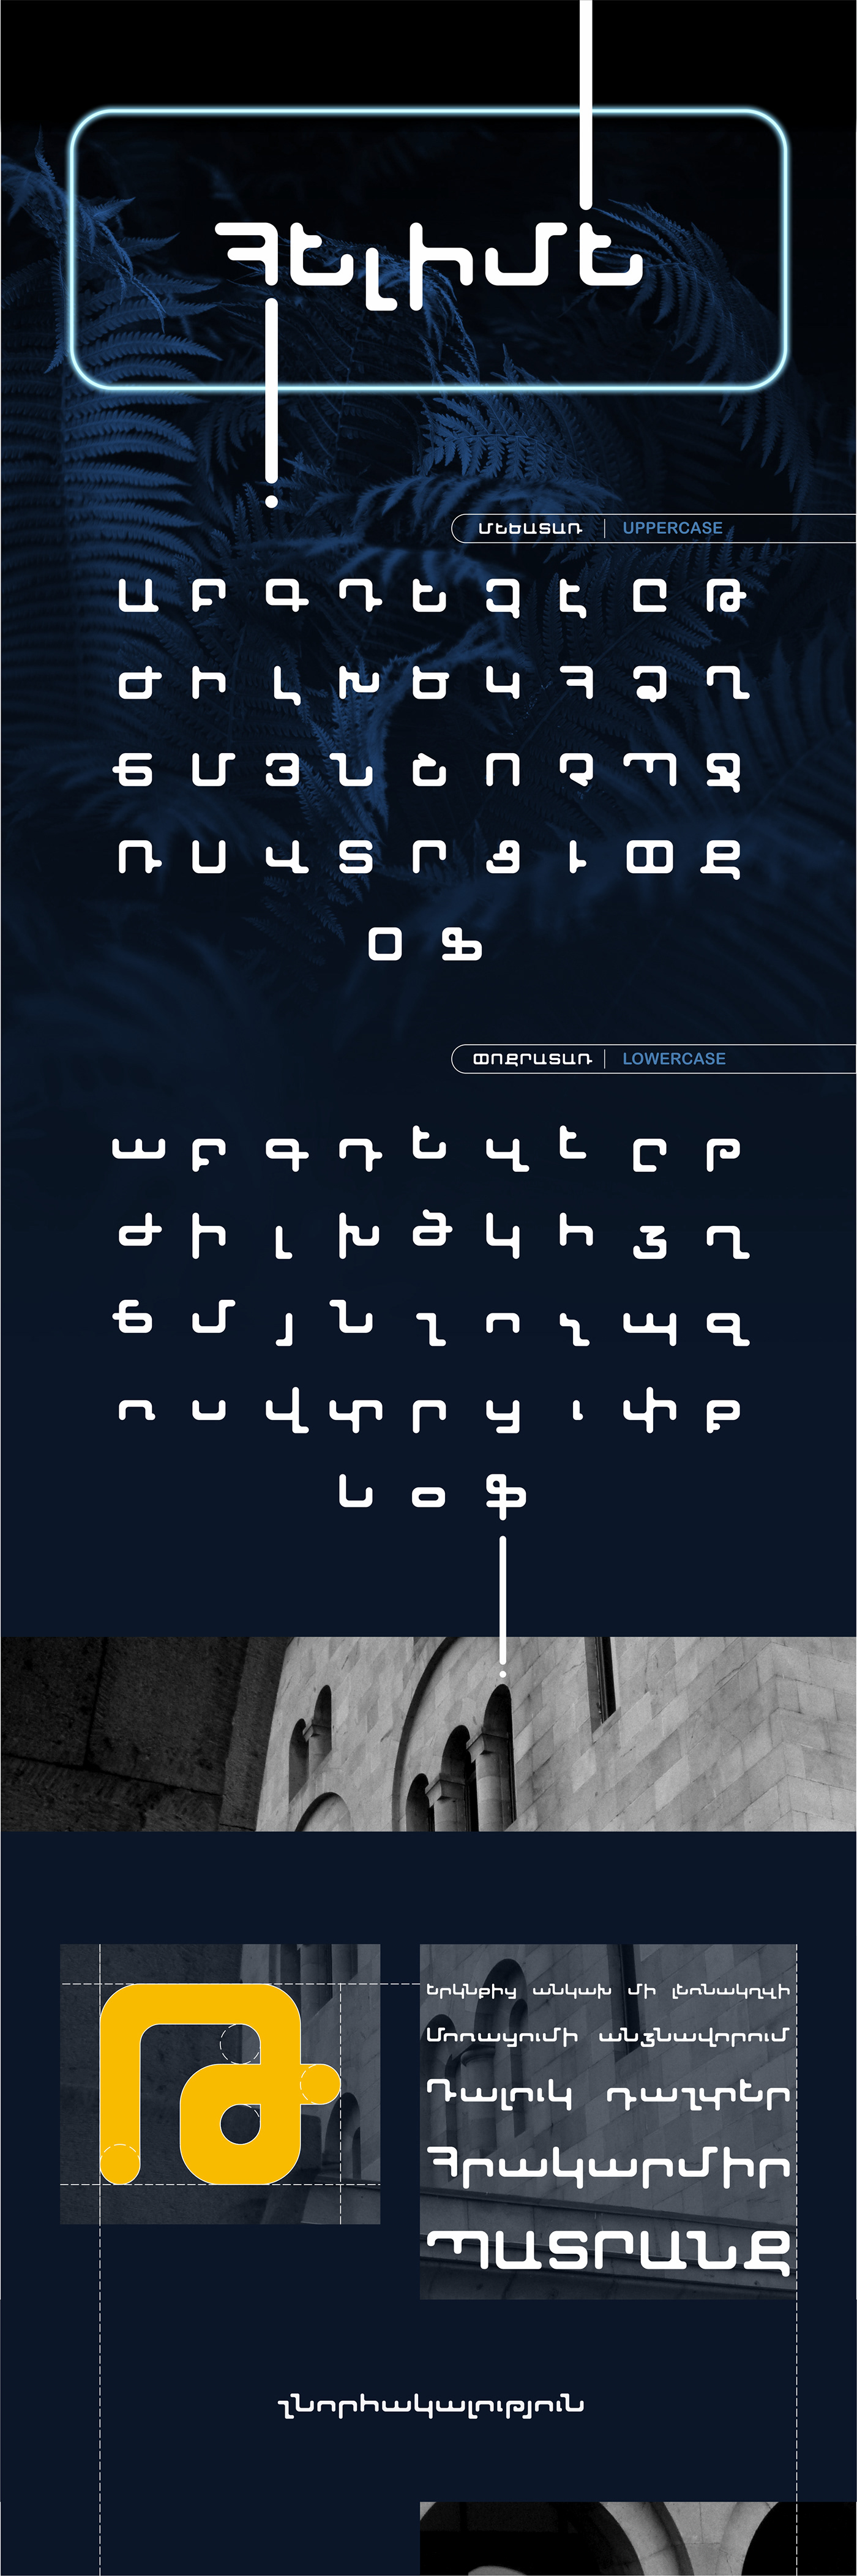 Armenian font font typography   graphic design  HELIME FONT ՀԱՅԿԱԿԱՆ ՏԱՌԱՏԵՍԱԿ